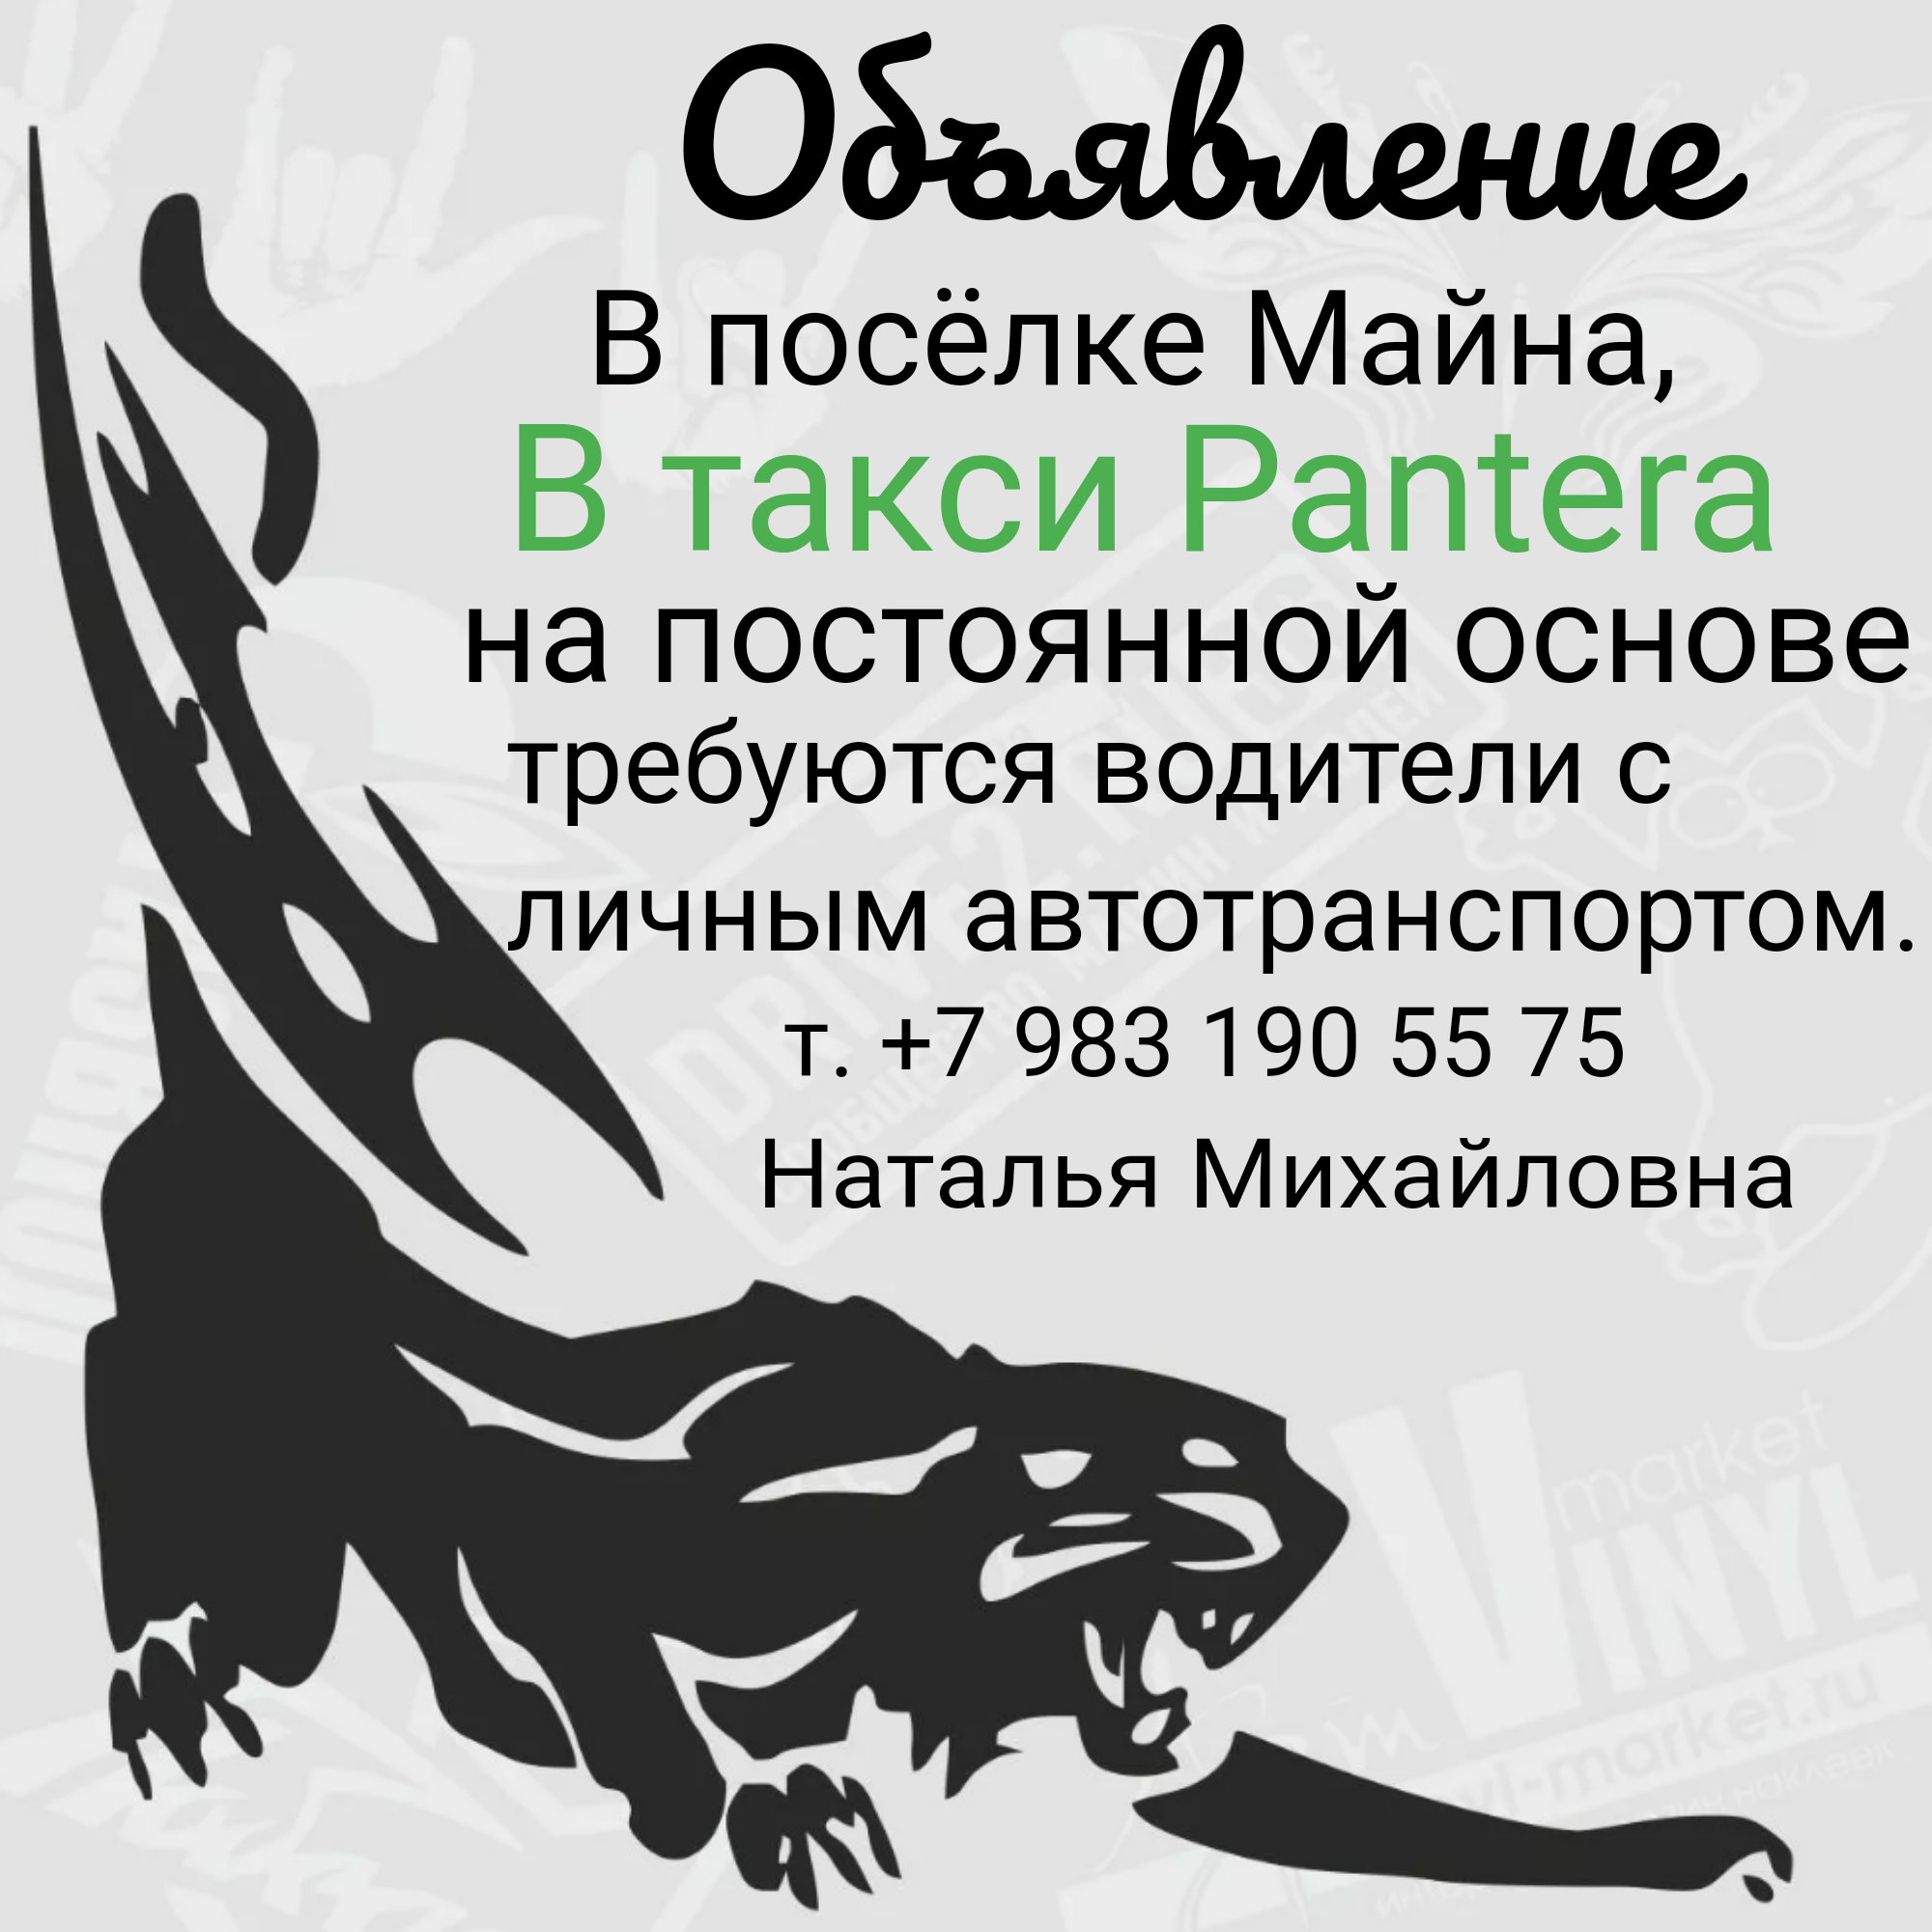 Саяногорск Инфо - logo3_5_6263.jpeg, Скачано: 50